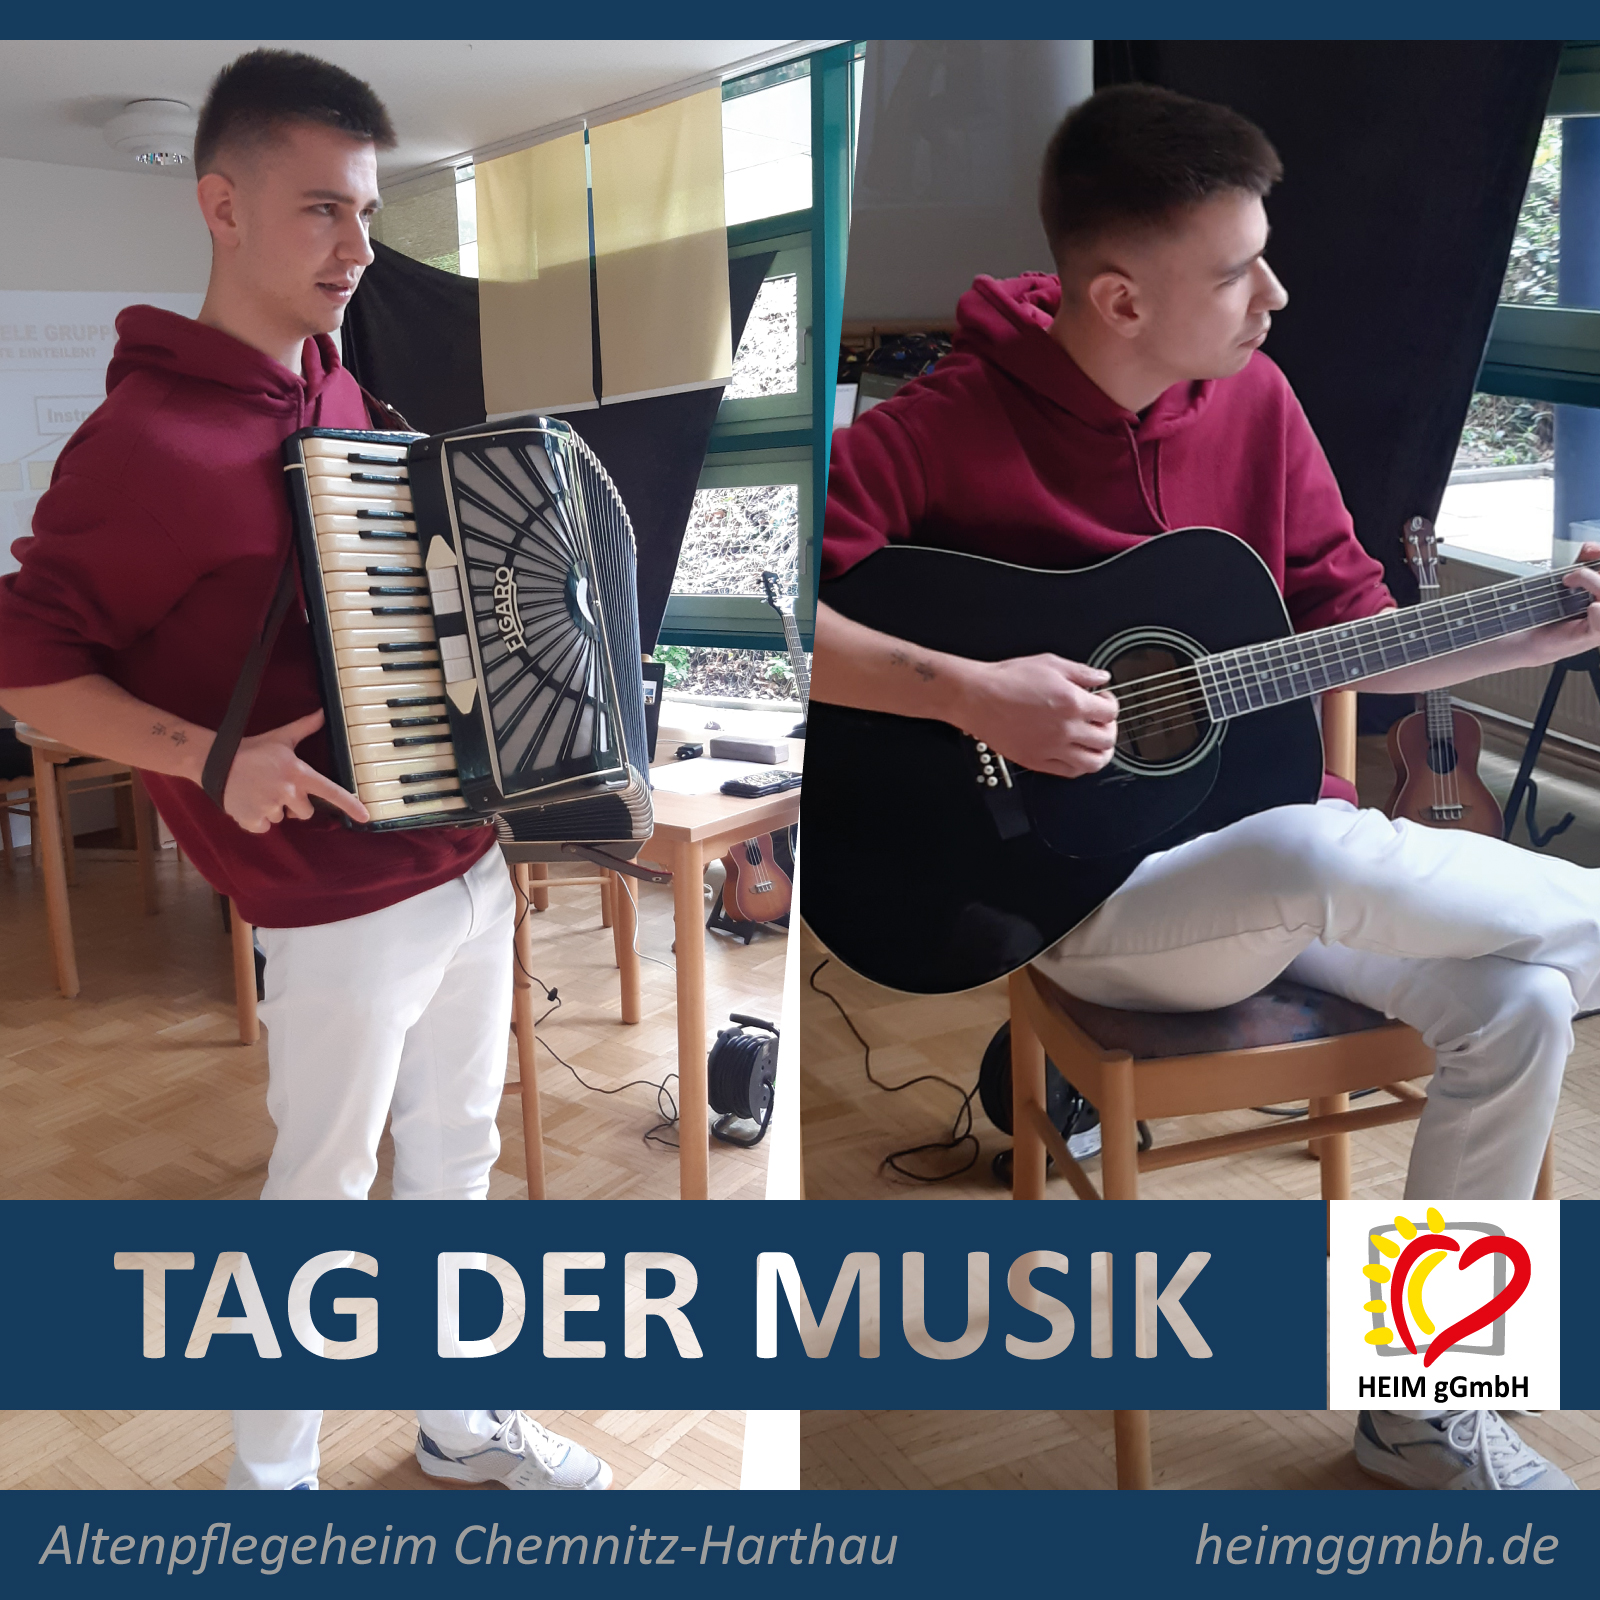 Tag der Musik im Altenpflegeheim Chemnitz-Harthau der HEIM gemeinnützigen GmbH - eine sehr gelungene Veranstaltung